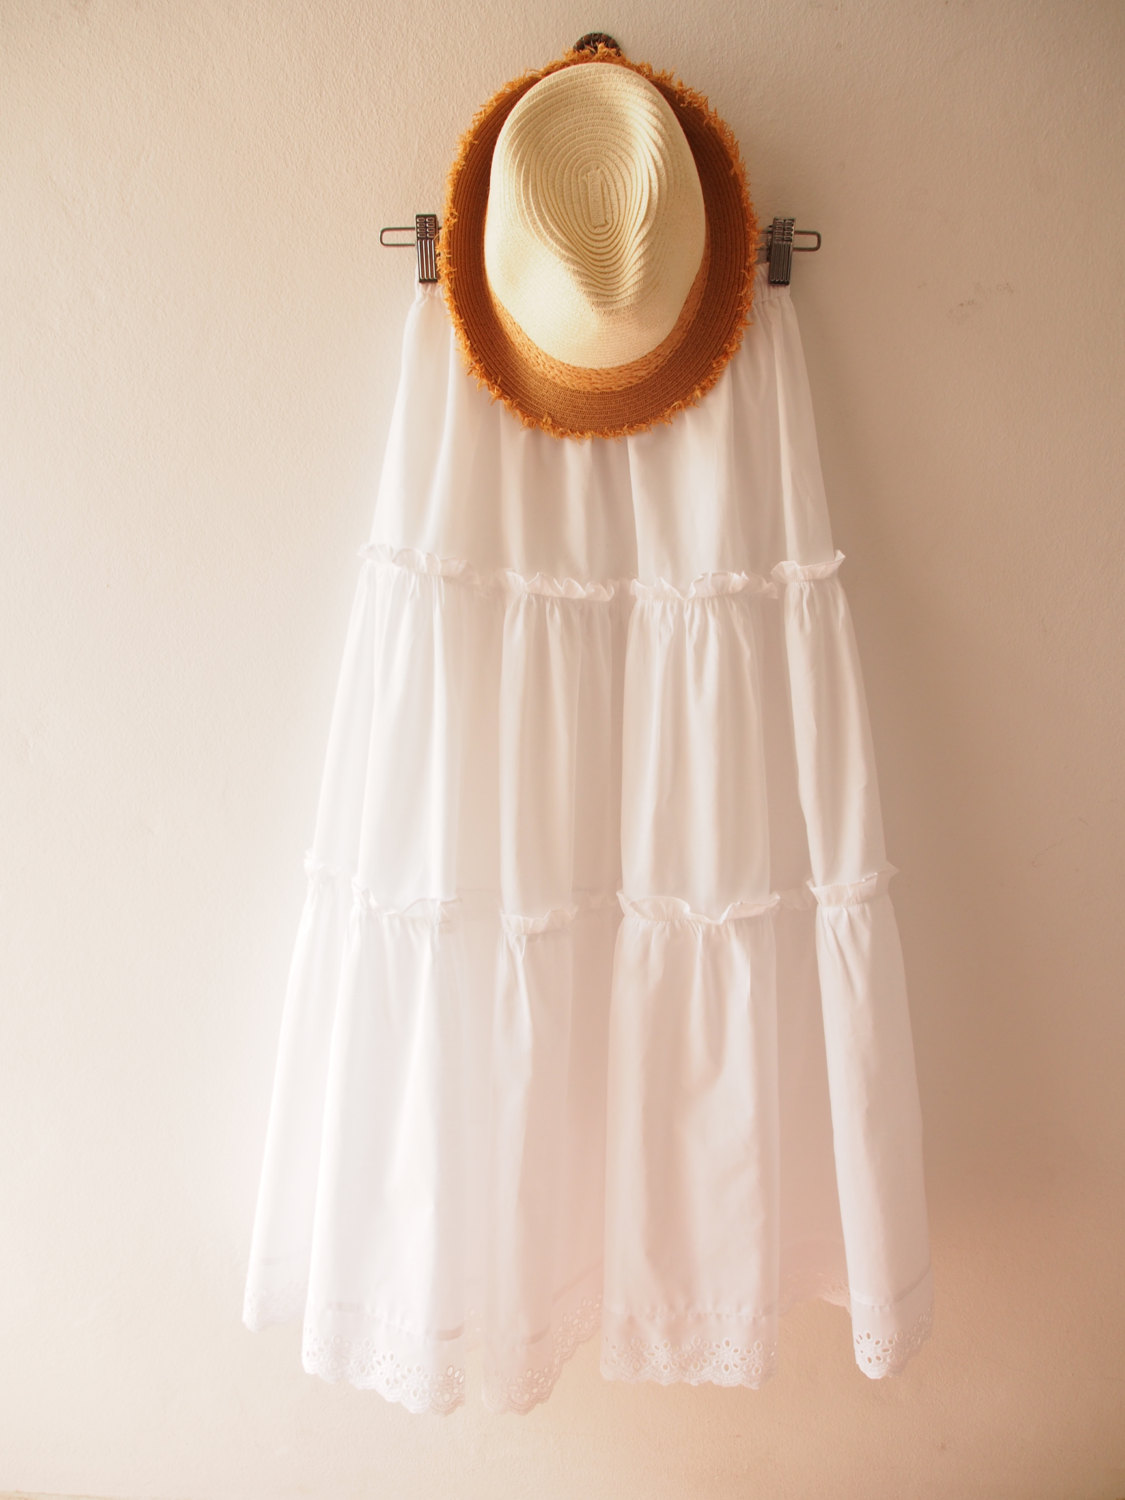 Boho Skirt White Maxi Skirt Bohemian Skirt Beach Skirt Lace Skirt Long Skirt